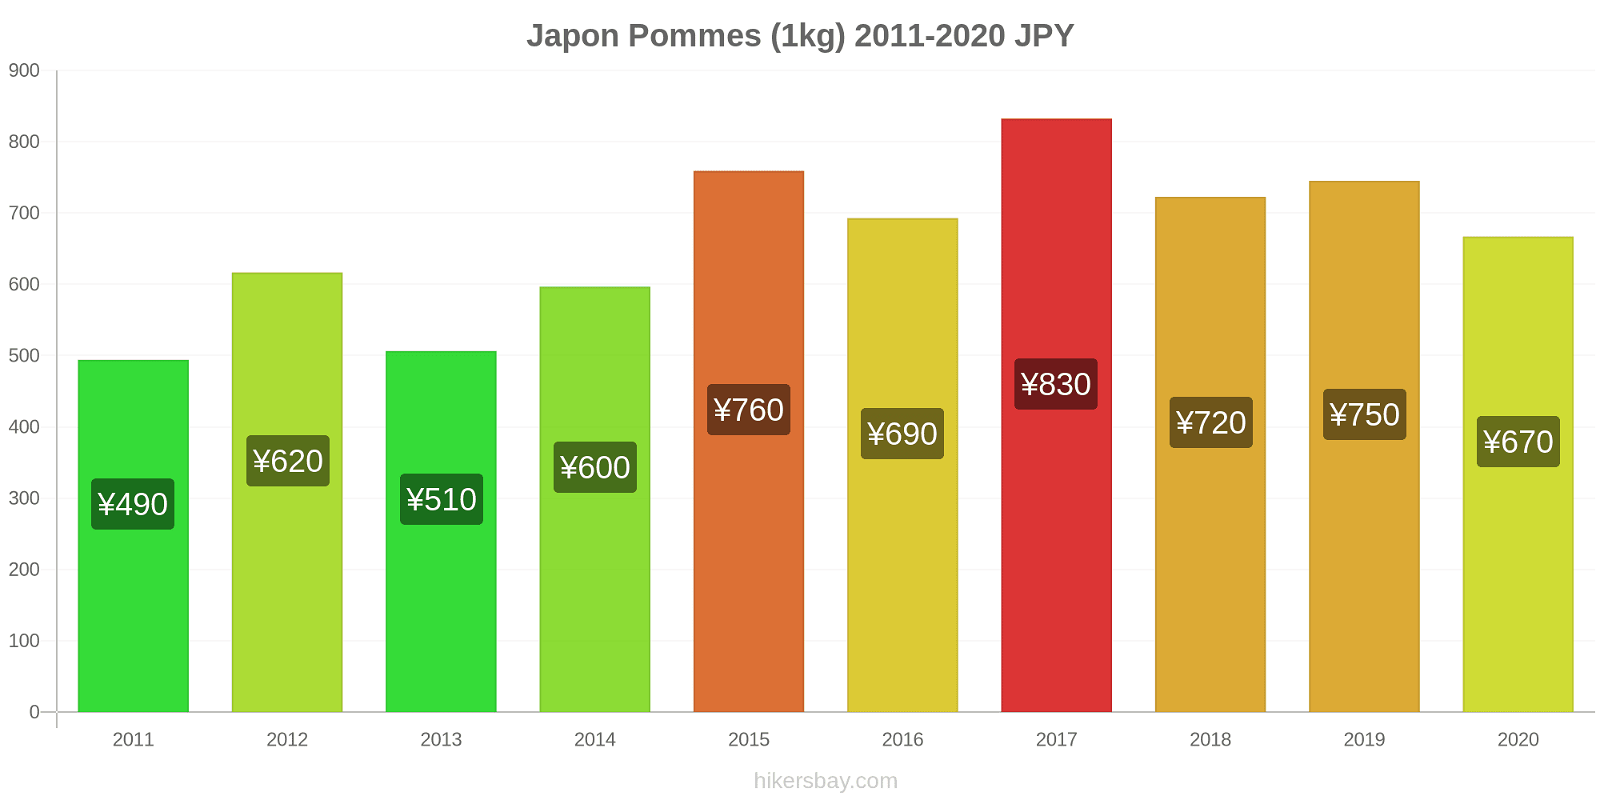 Japon changements de prix Pommes (1kg) hikersbay.com